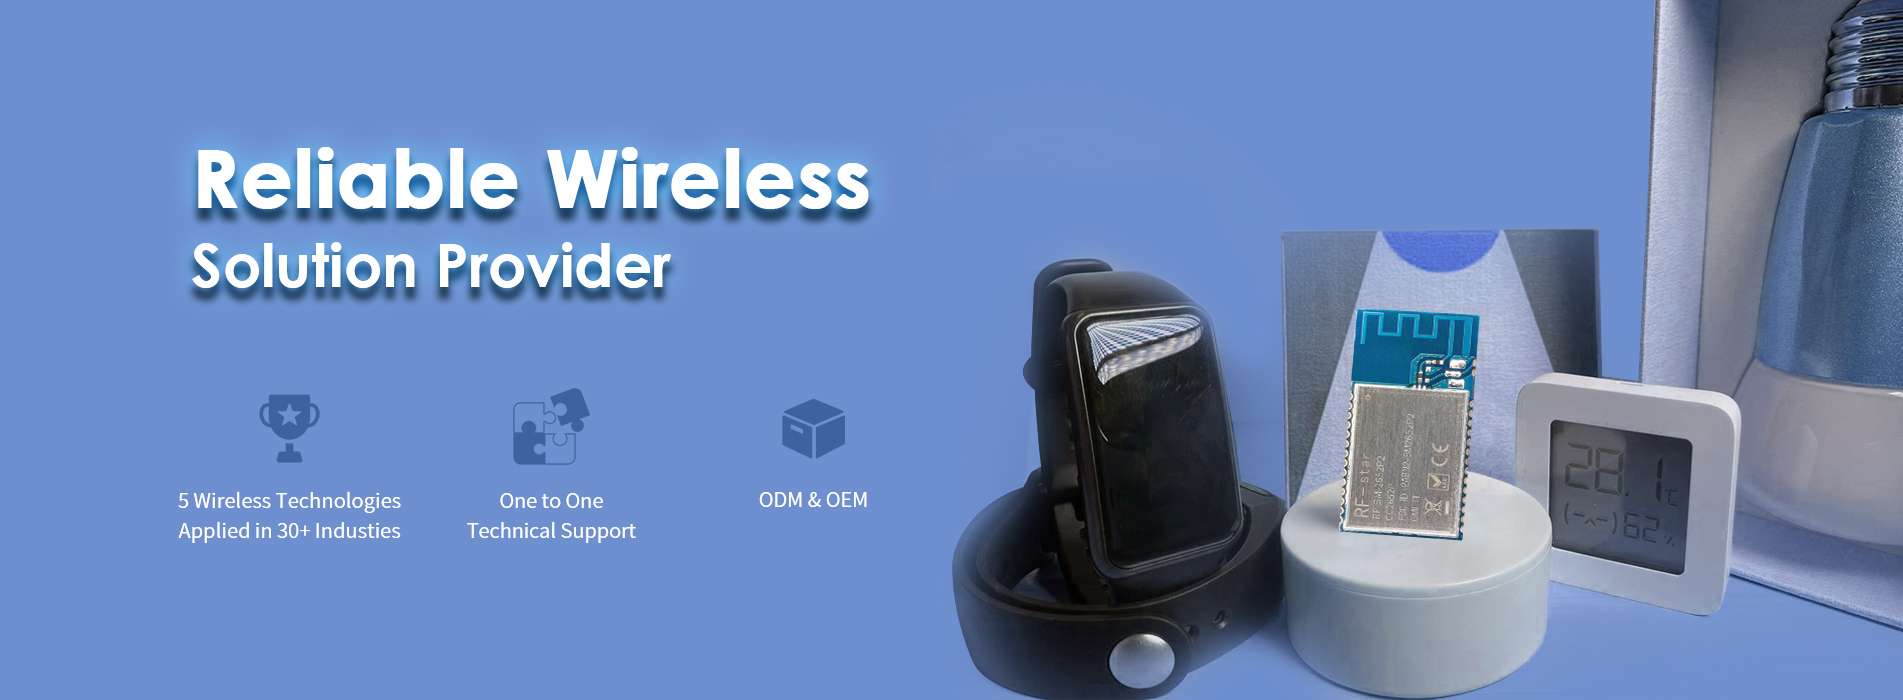 RFstar wireless module products